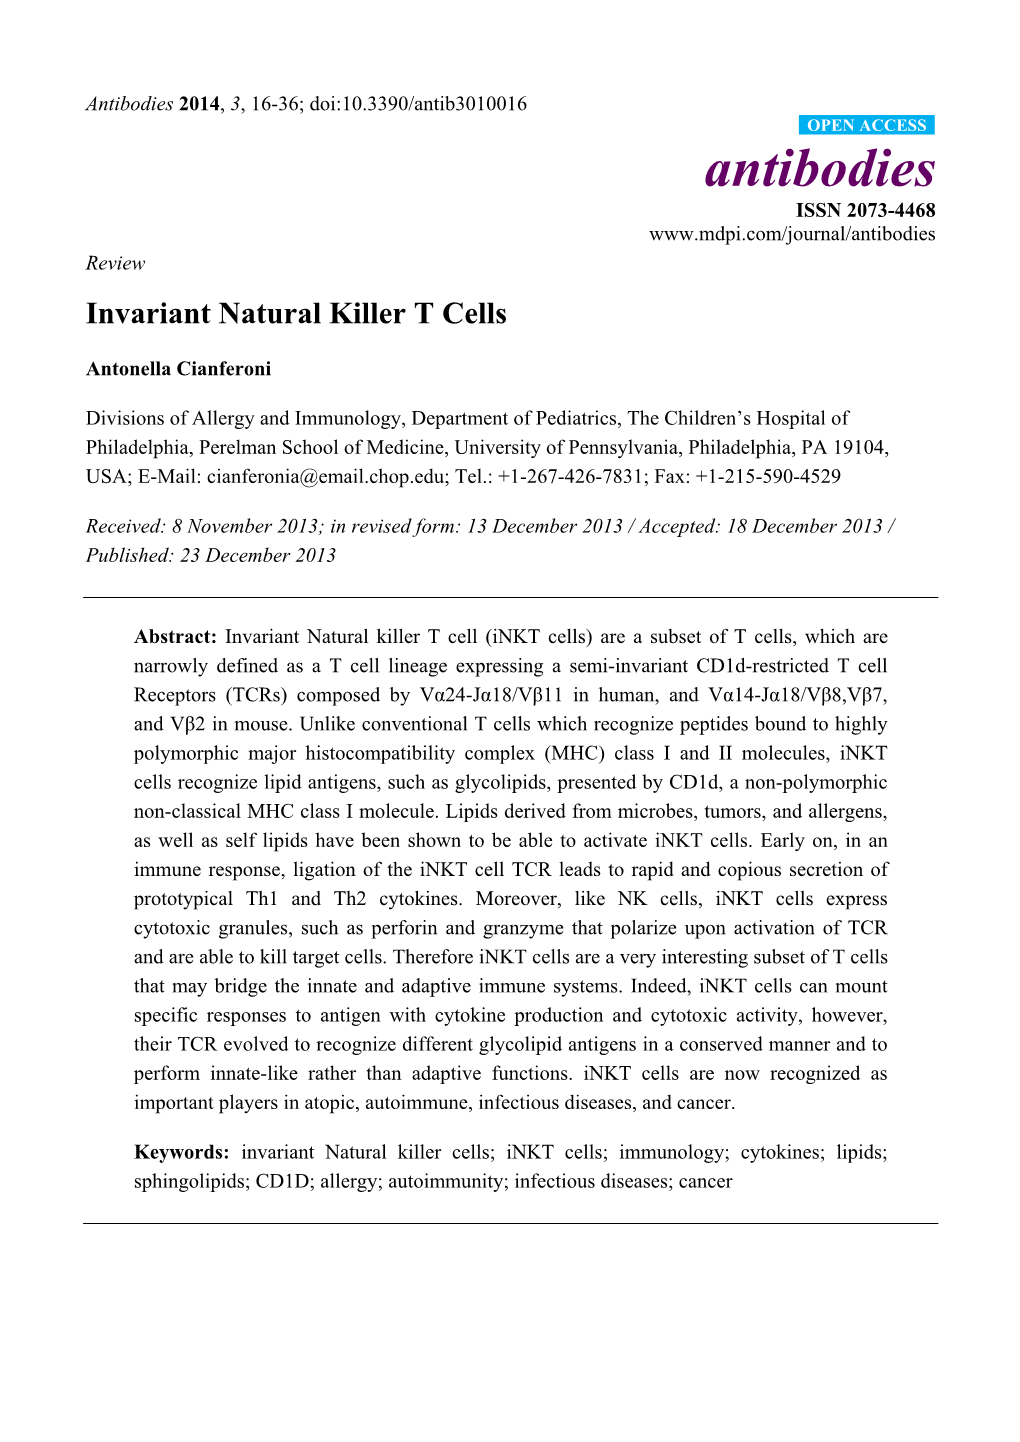 Invariant Natural Killer T Cells